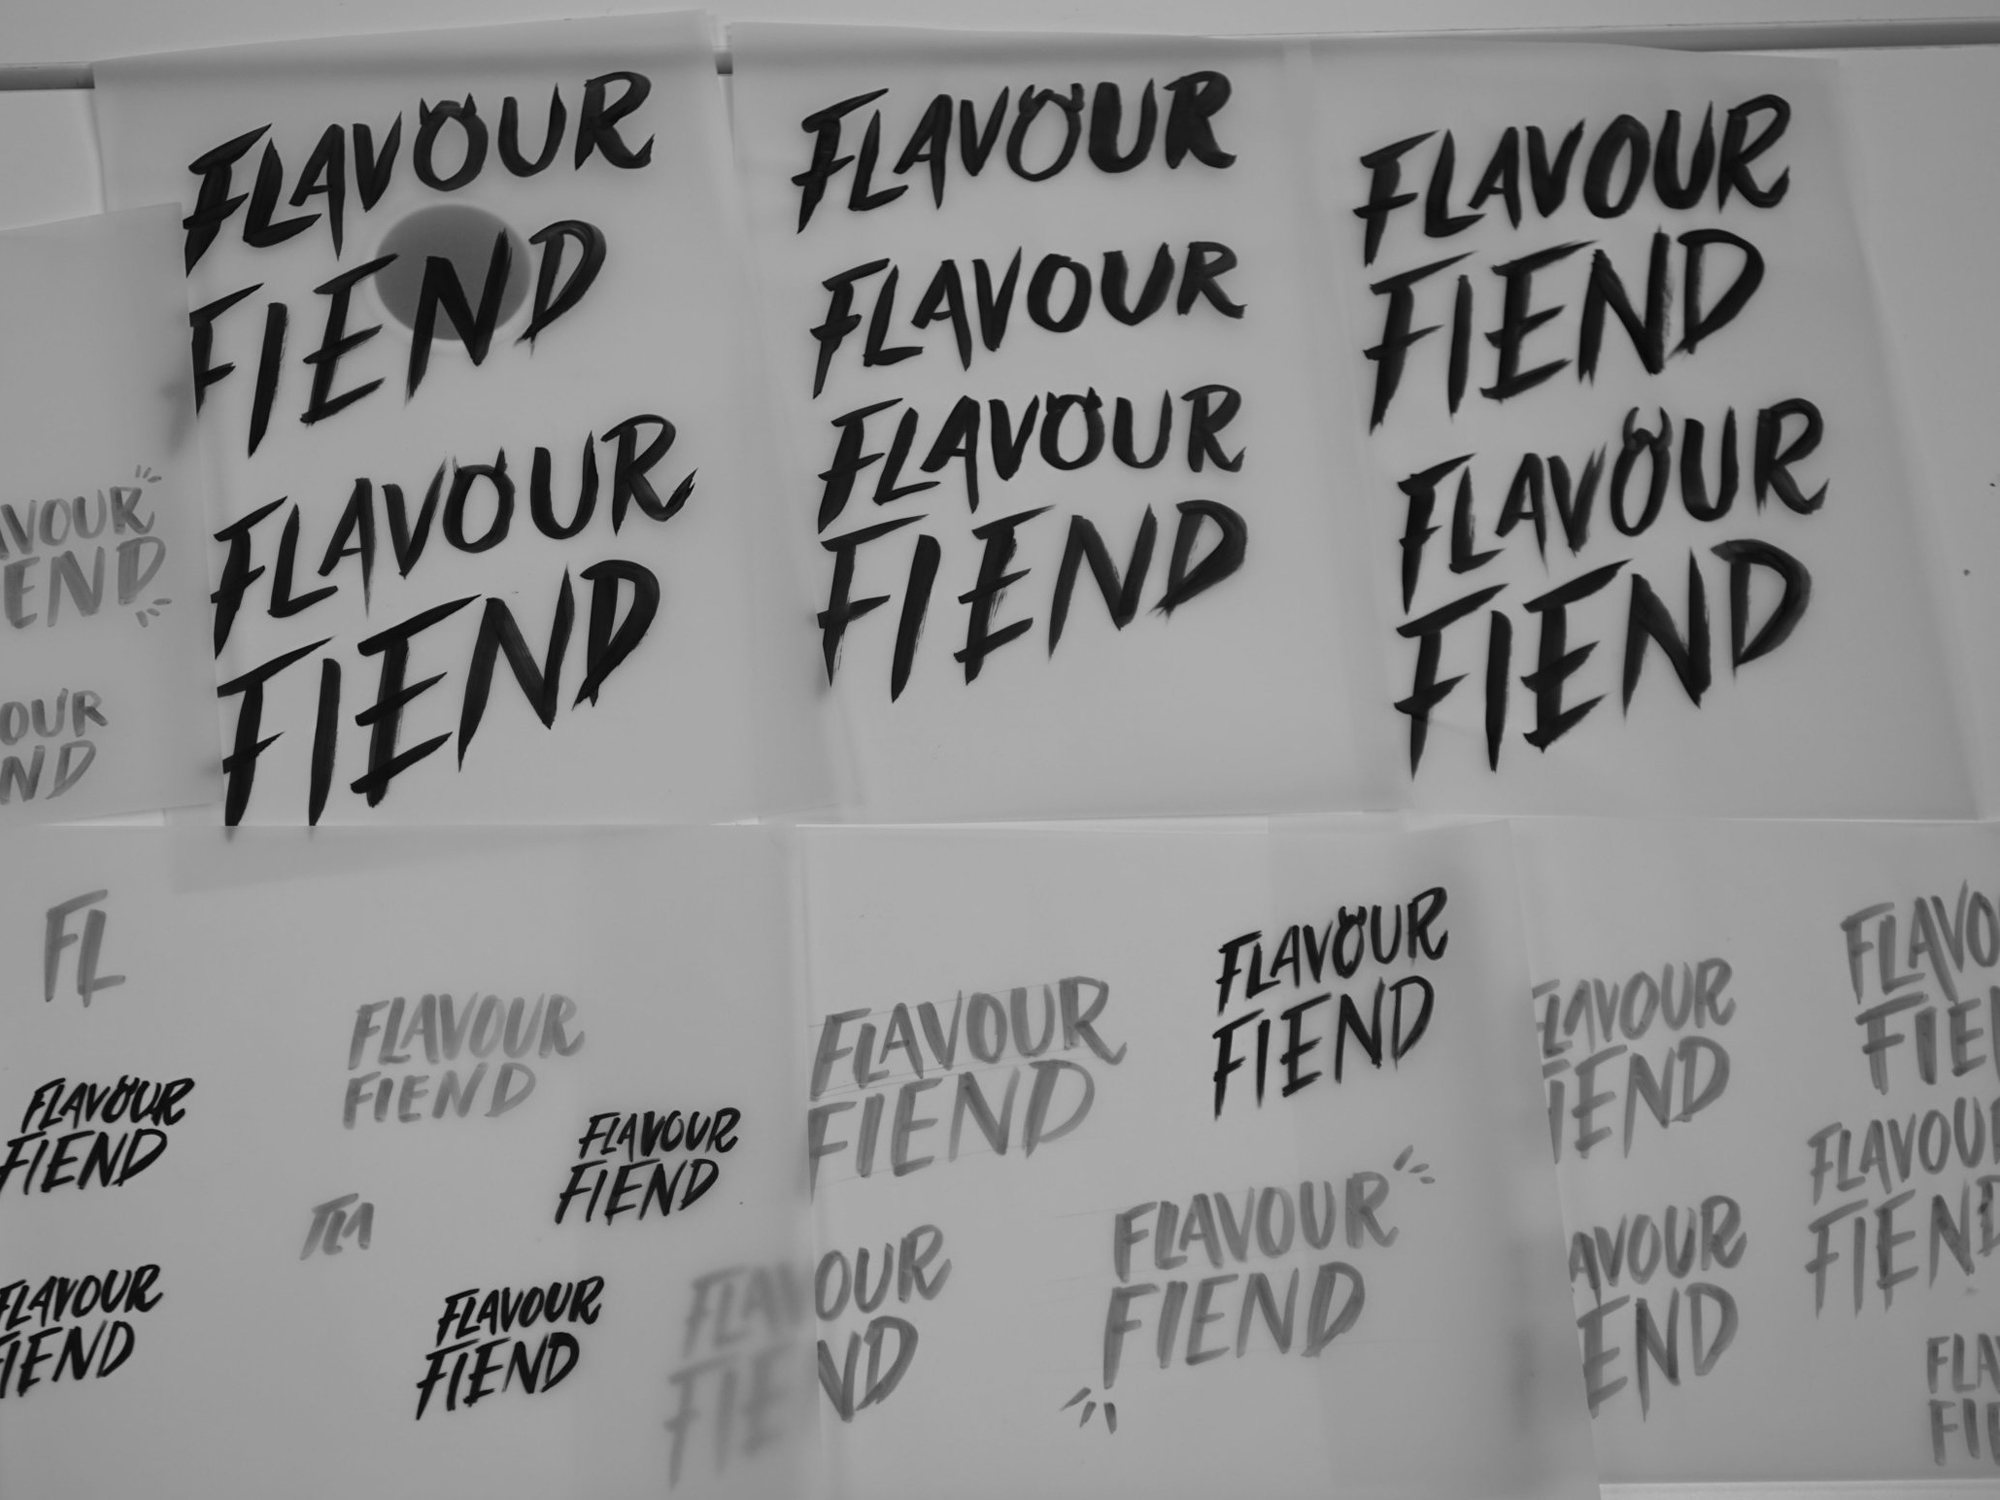 onfire design flavour fiend branding packaging design auckland 17